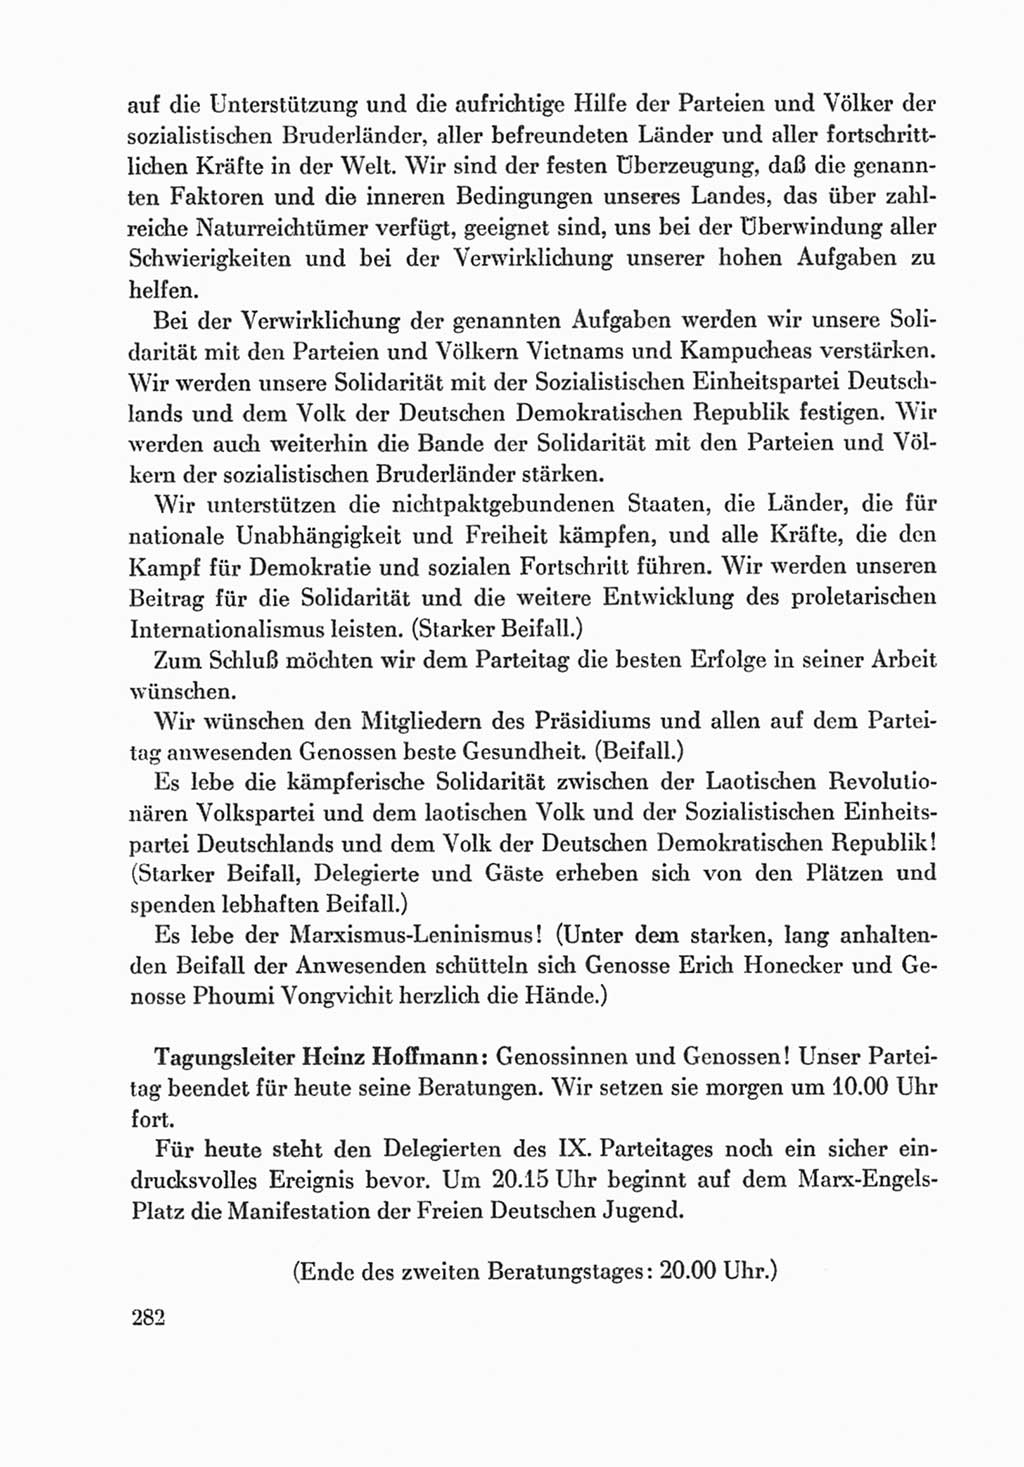 Protokoll der Verhandlungen des Ⅸ. Parteitages der Sozialistischen Einheitspartei Deutschlands (SED) [Deutsche Demokratische Republik (DDR)] 1976, Band 1, Seite 282 (Prot. Verh. Ⅸ. PT SED DDR 1976, Bd. 1, S. 282)